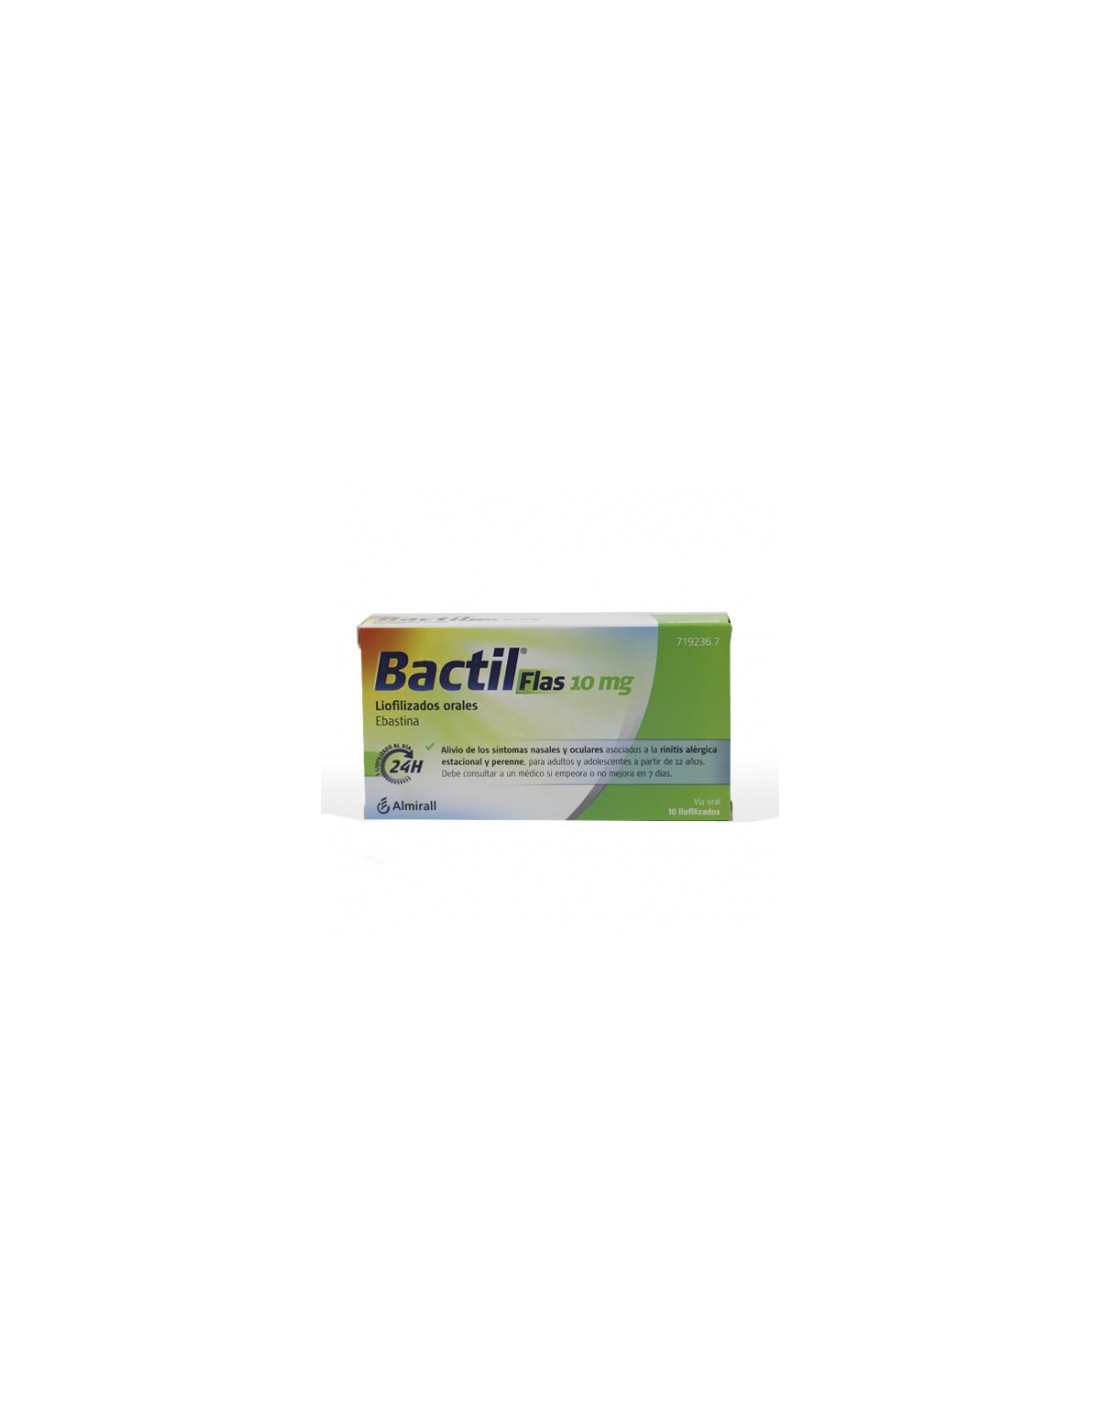 Bactil 10mg 20 comprimidos